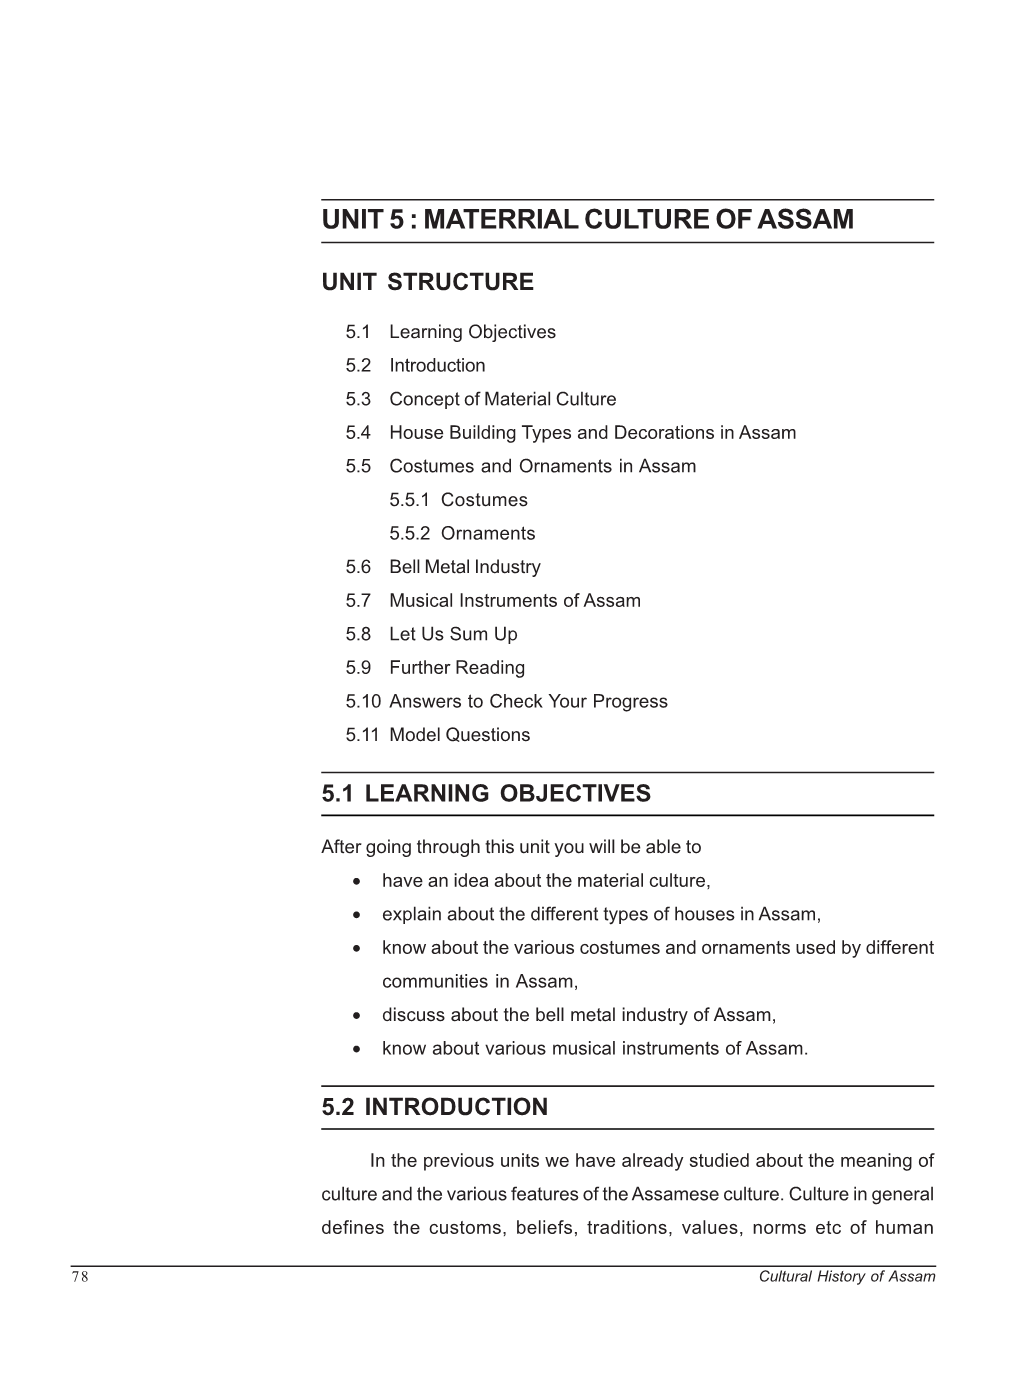 Unit 5 : Materrial Culture of Assam